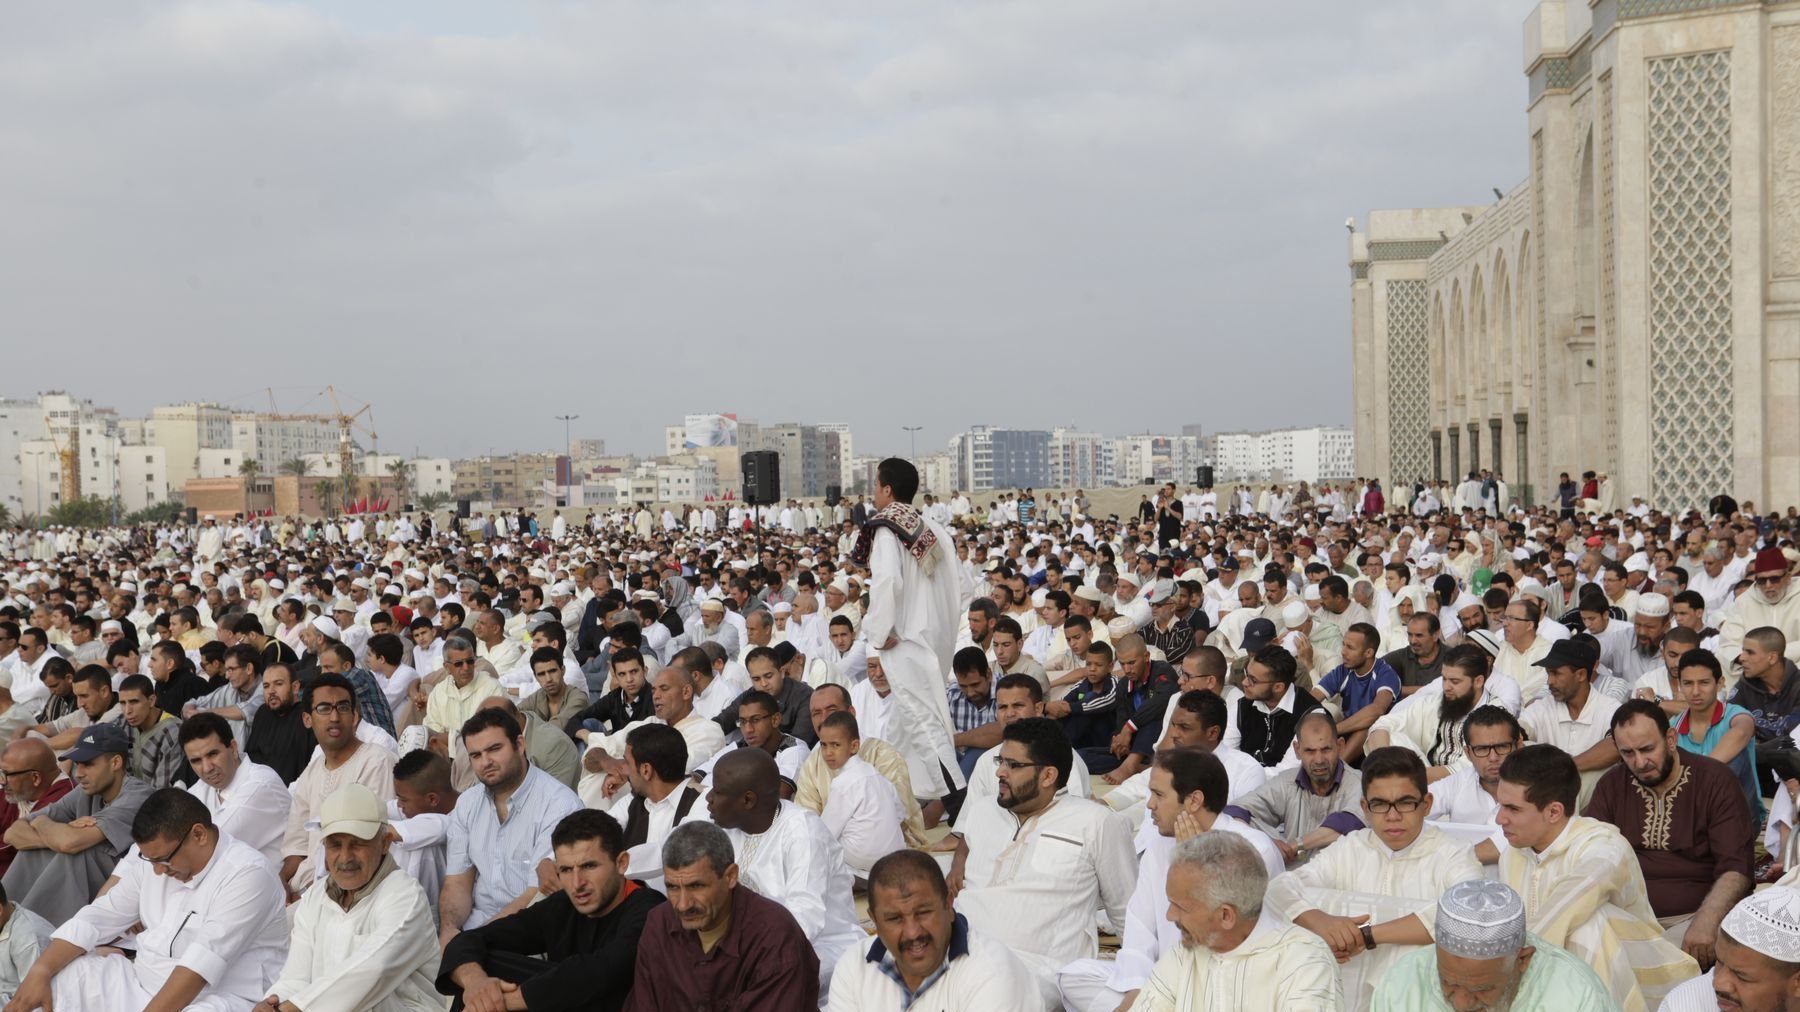 La foule des croyants a en effet largement débordé l'enceinte de la mosquée.
